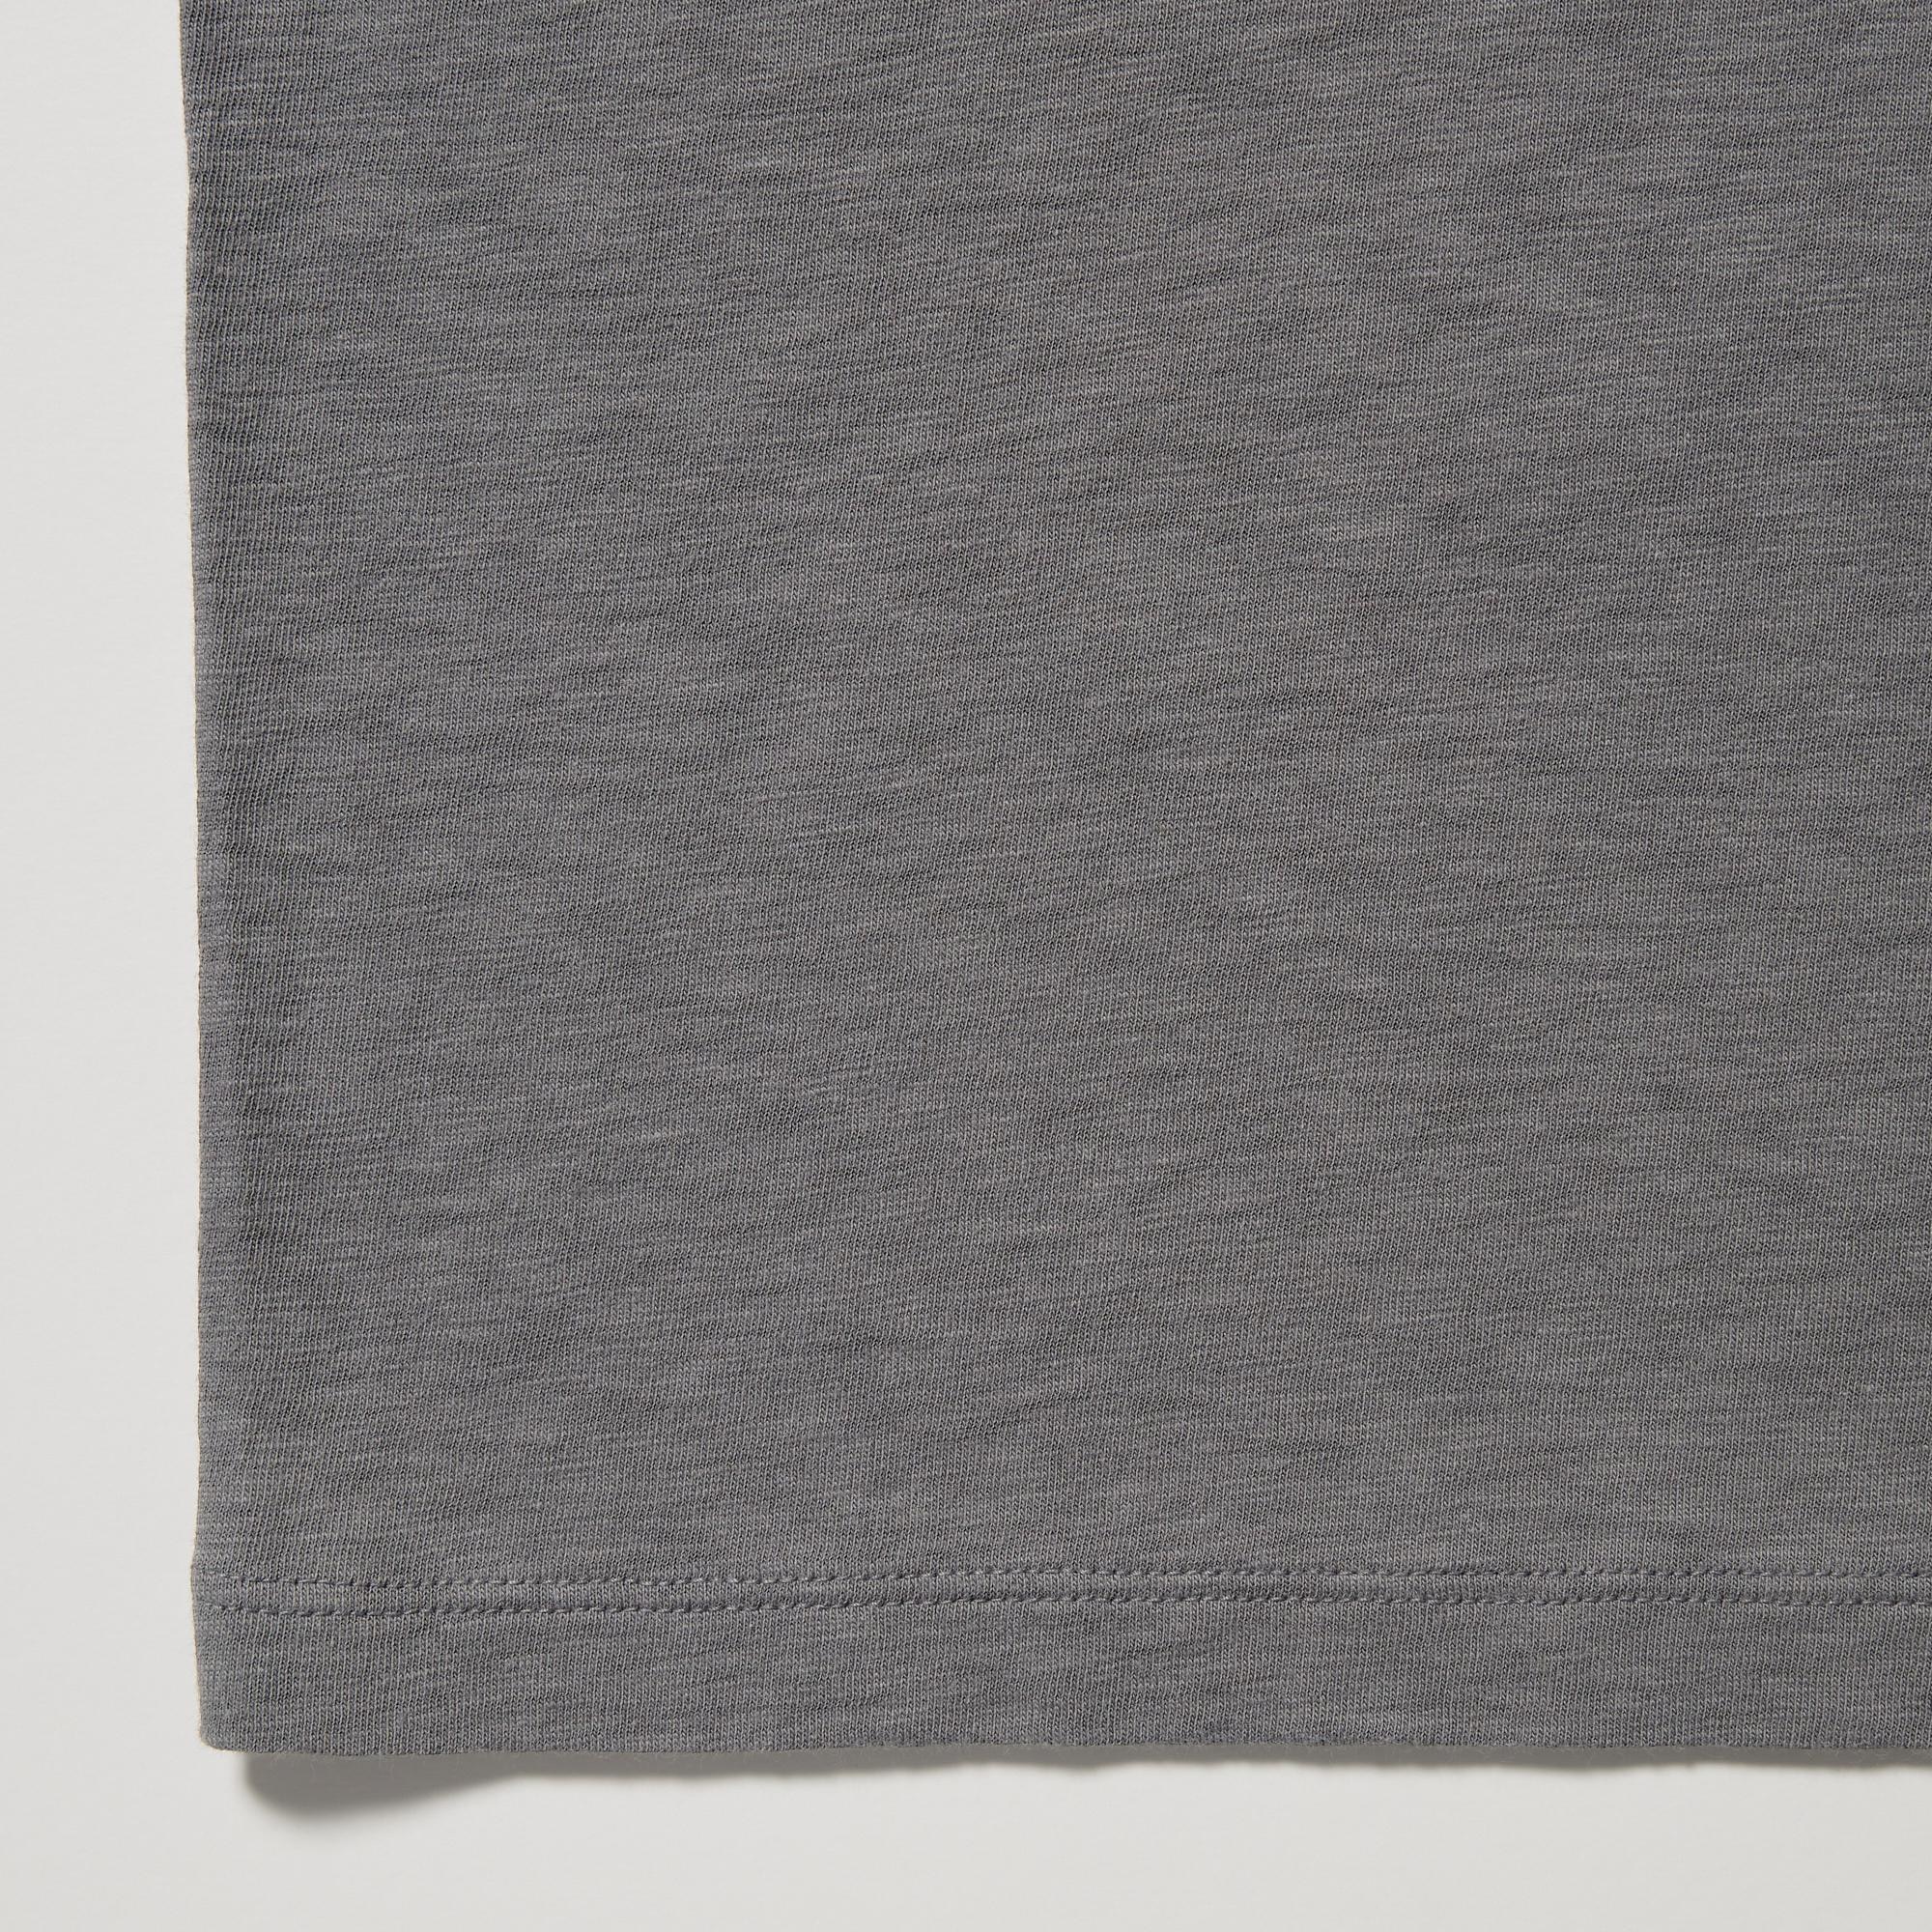 Slub Cotton Cropped Short Sleeved T-Shirt | UNIQLO UK